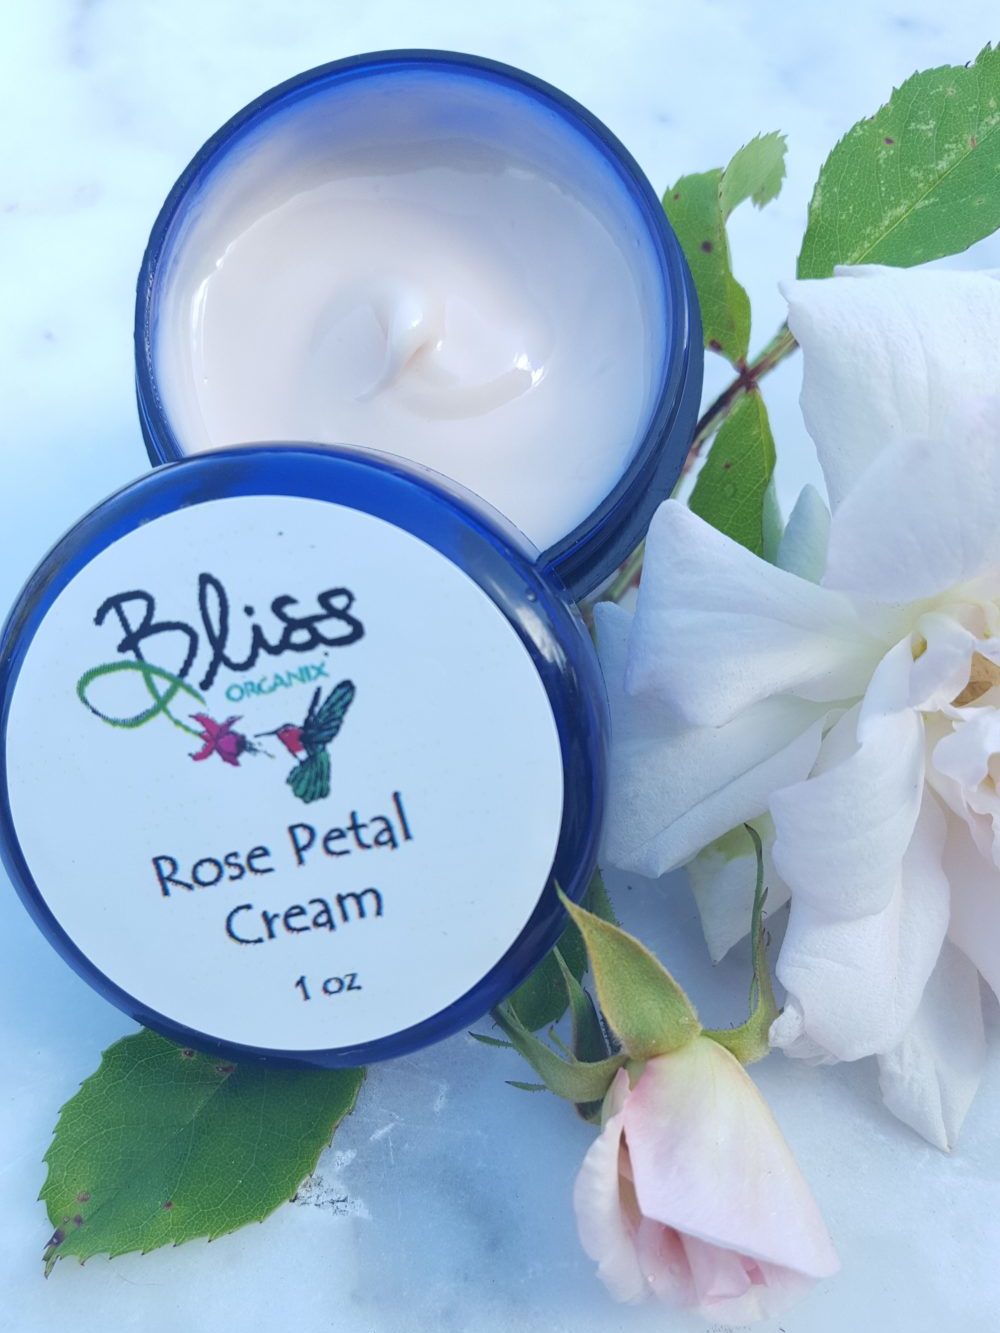 Rose Petal Cream - 1 oz - Bliss Organix